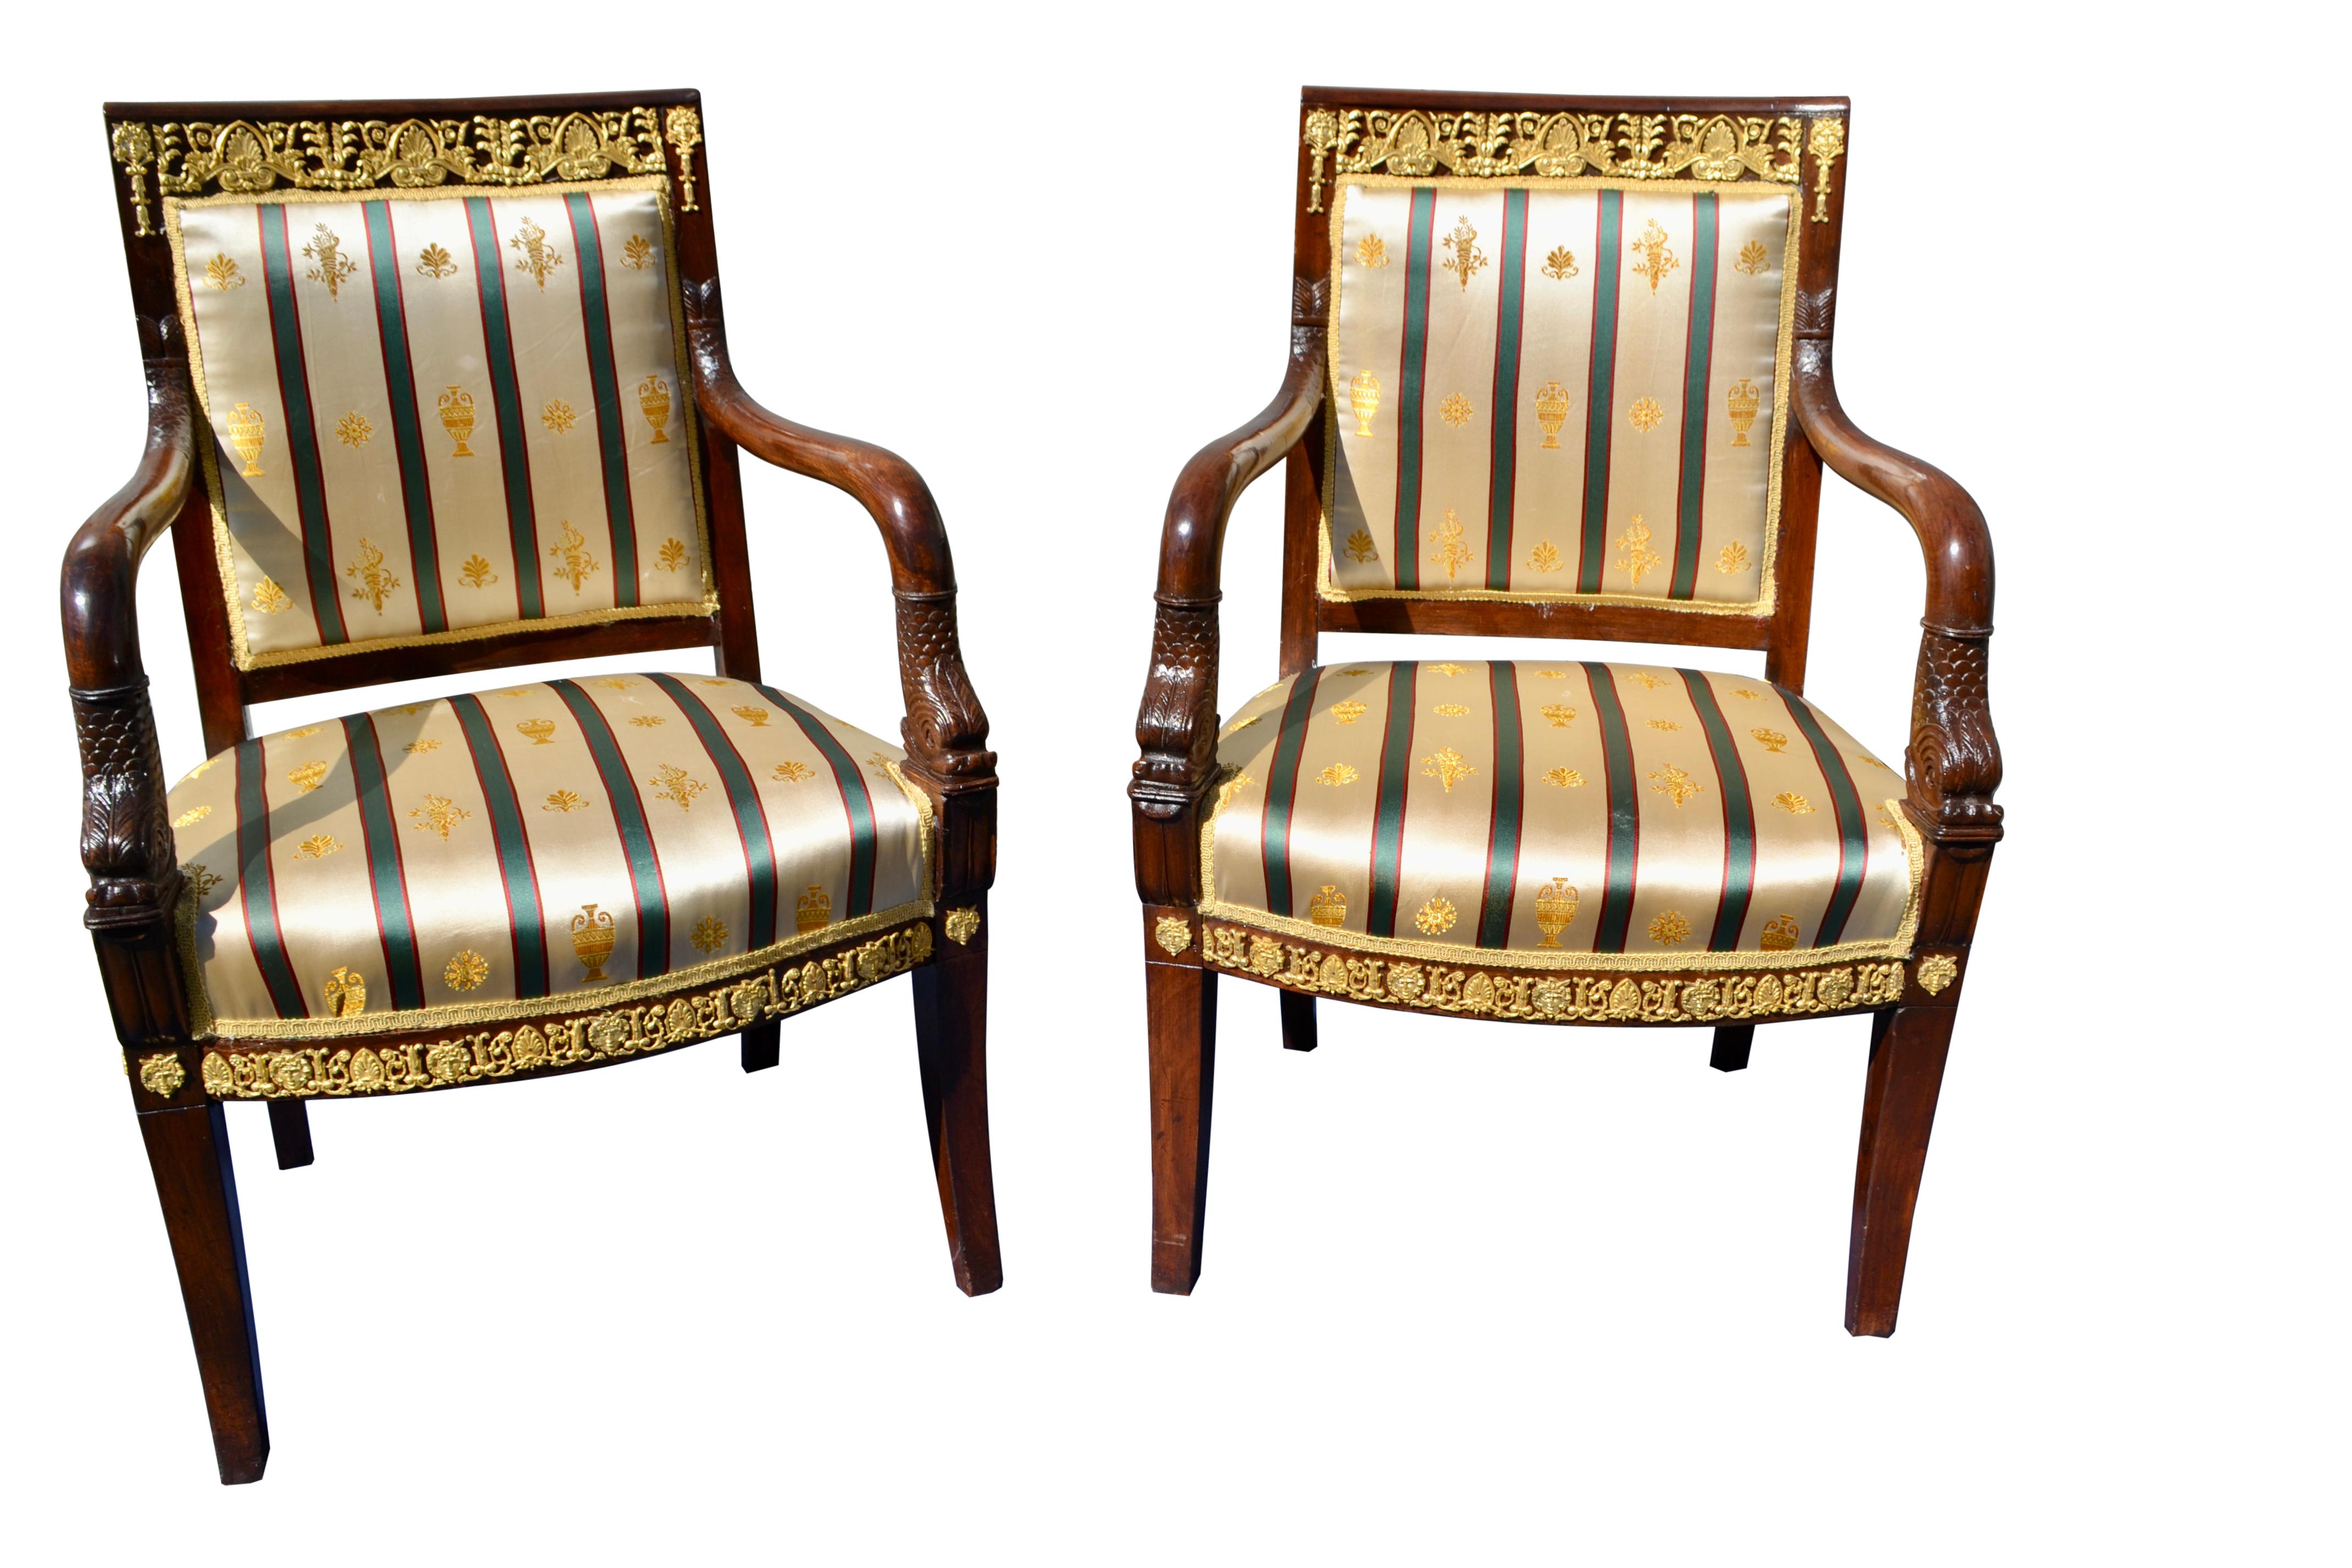 Ein auffälliges Paar spätfranzösischer Empire-Sessel aus Mahagoni, reich verziert mit vergoldeten Bronzebeschlägen an der oberen Rückenlehne und rund um die Unterseite des Sitzes. Die geschwungenen, nach vorne offenen Arme enden in geschnitzten